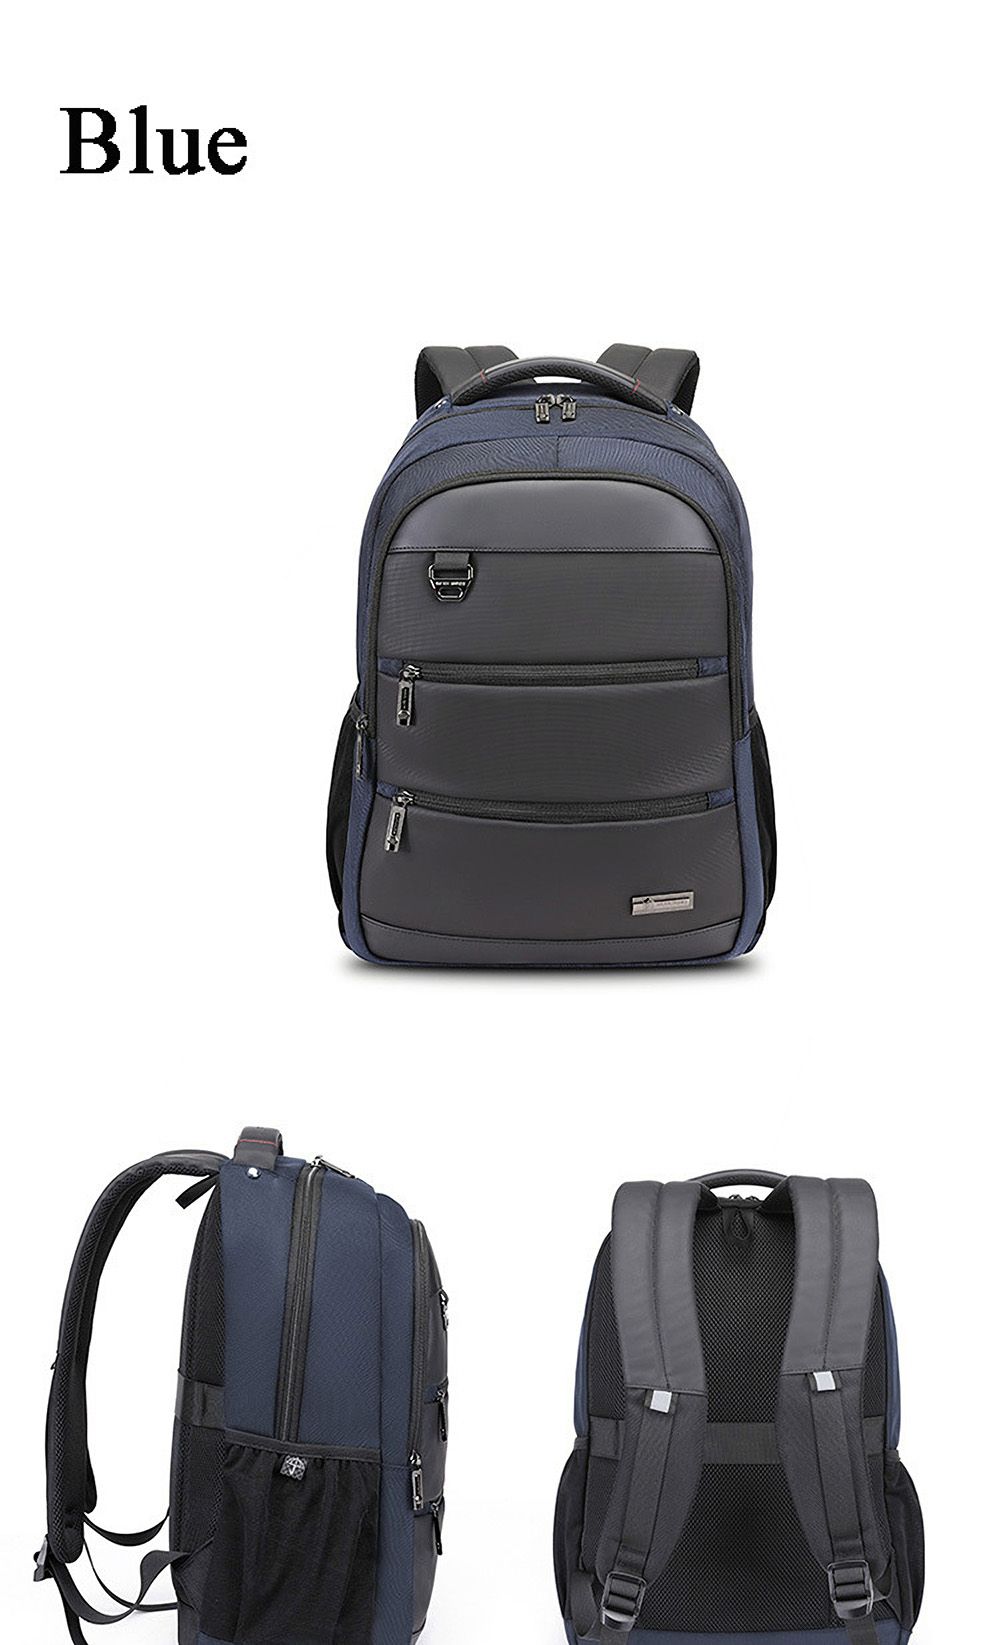 17-inch-Business-Backpack-Laptop-Bag-Casual-Large-Capacity-Schoolbag-Shoulders-Waterproof-Storage-Ba-1558399